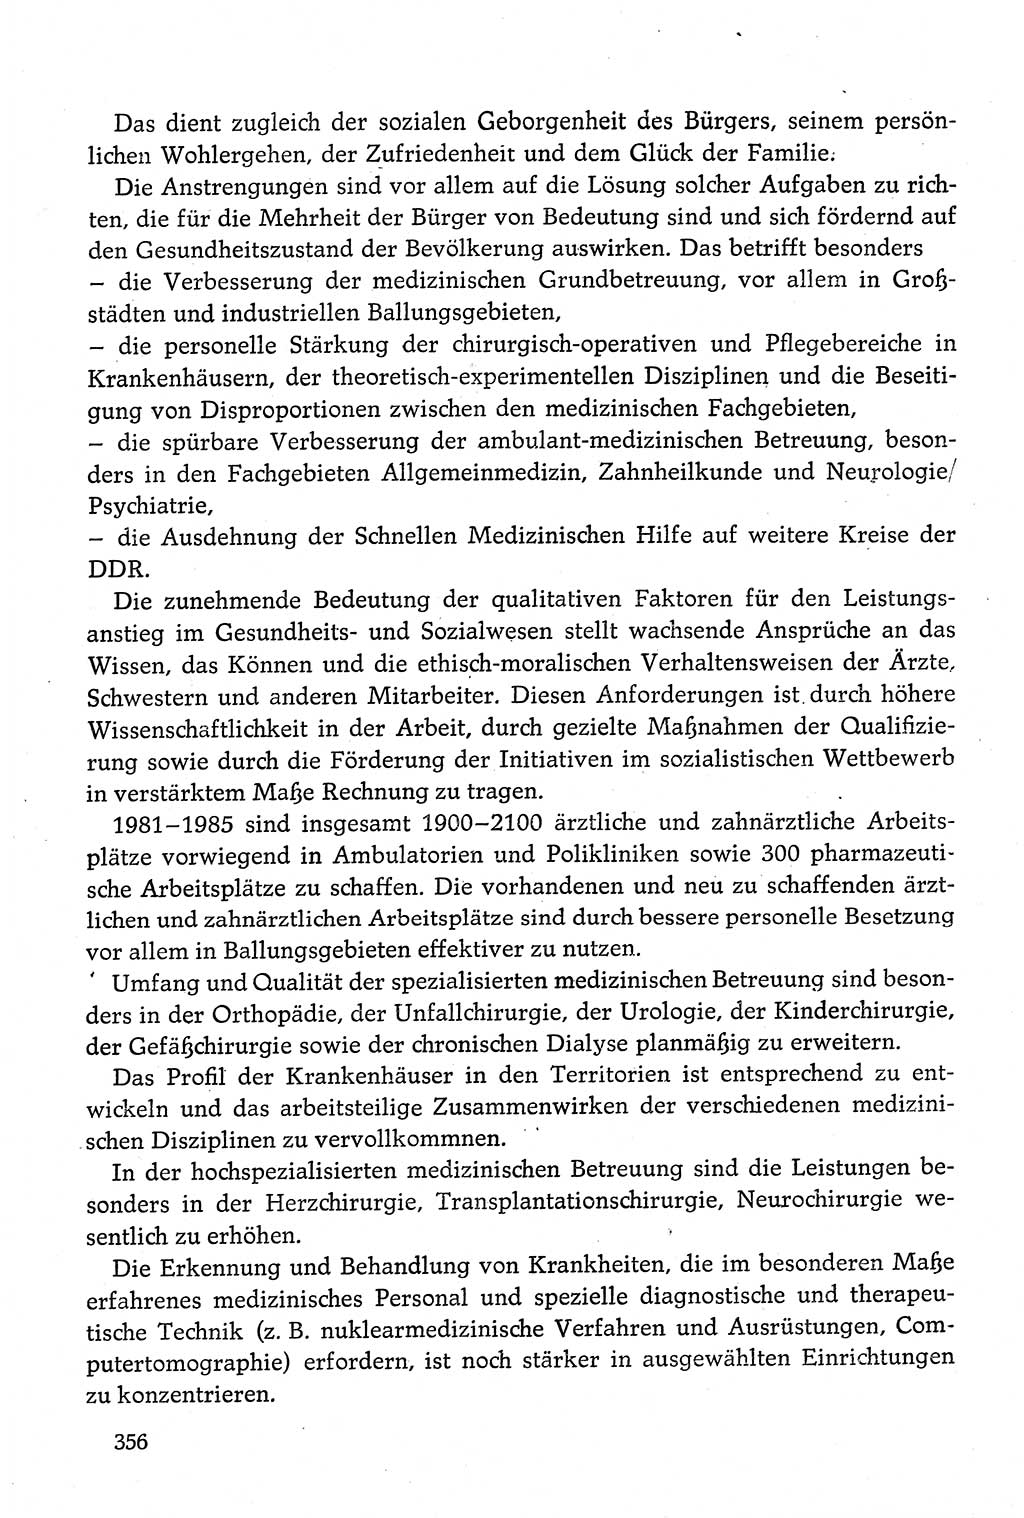 Dokumente der Sozialistischen Einheitspartei Deutschlands (SED) [Deutsche Demokratische Republik (DDR)] 1980-1981, Seite 356 (Dok. SED DDR 1980-1981, S. 356)